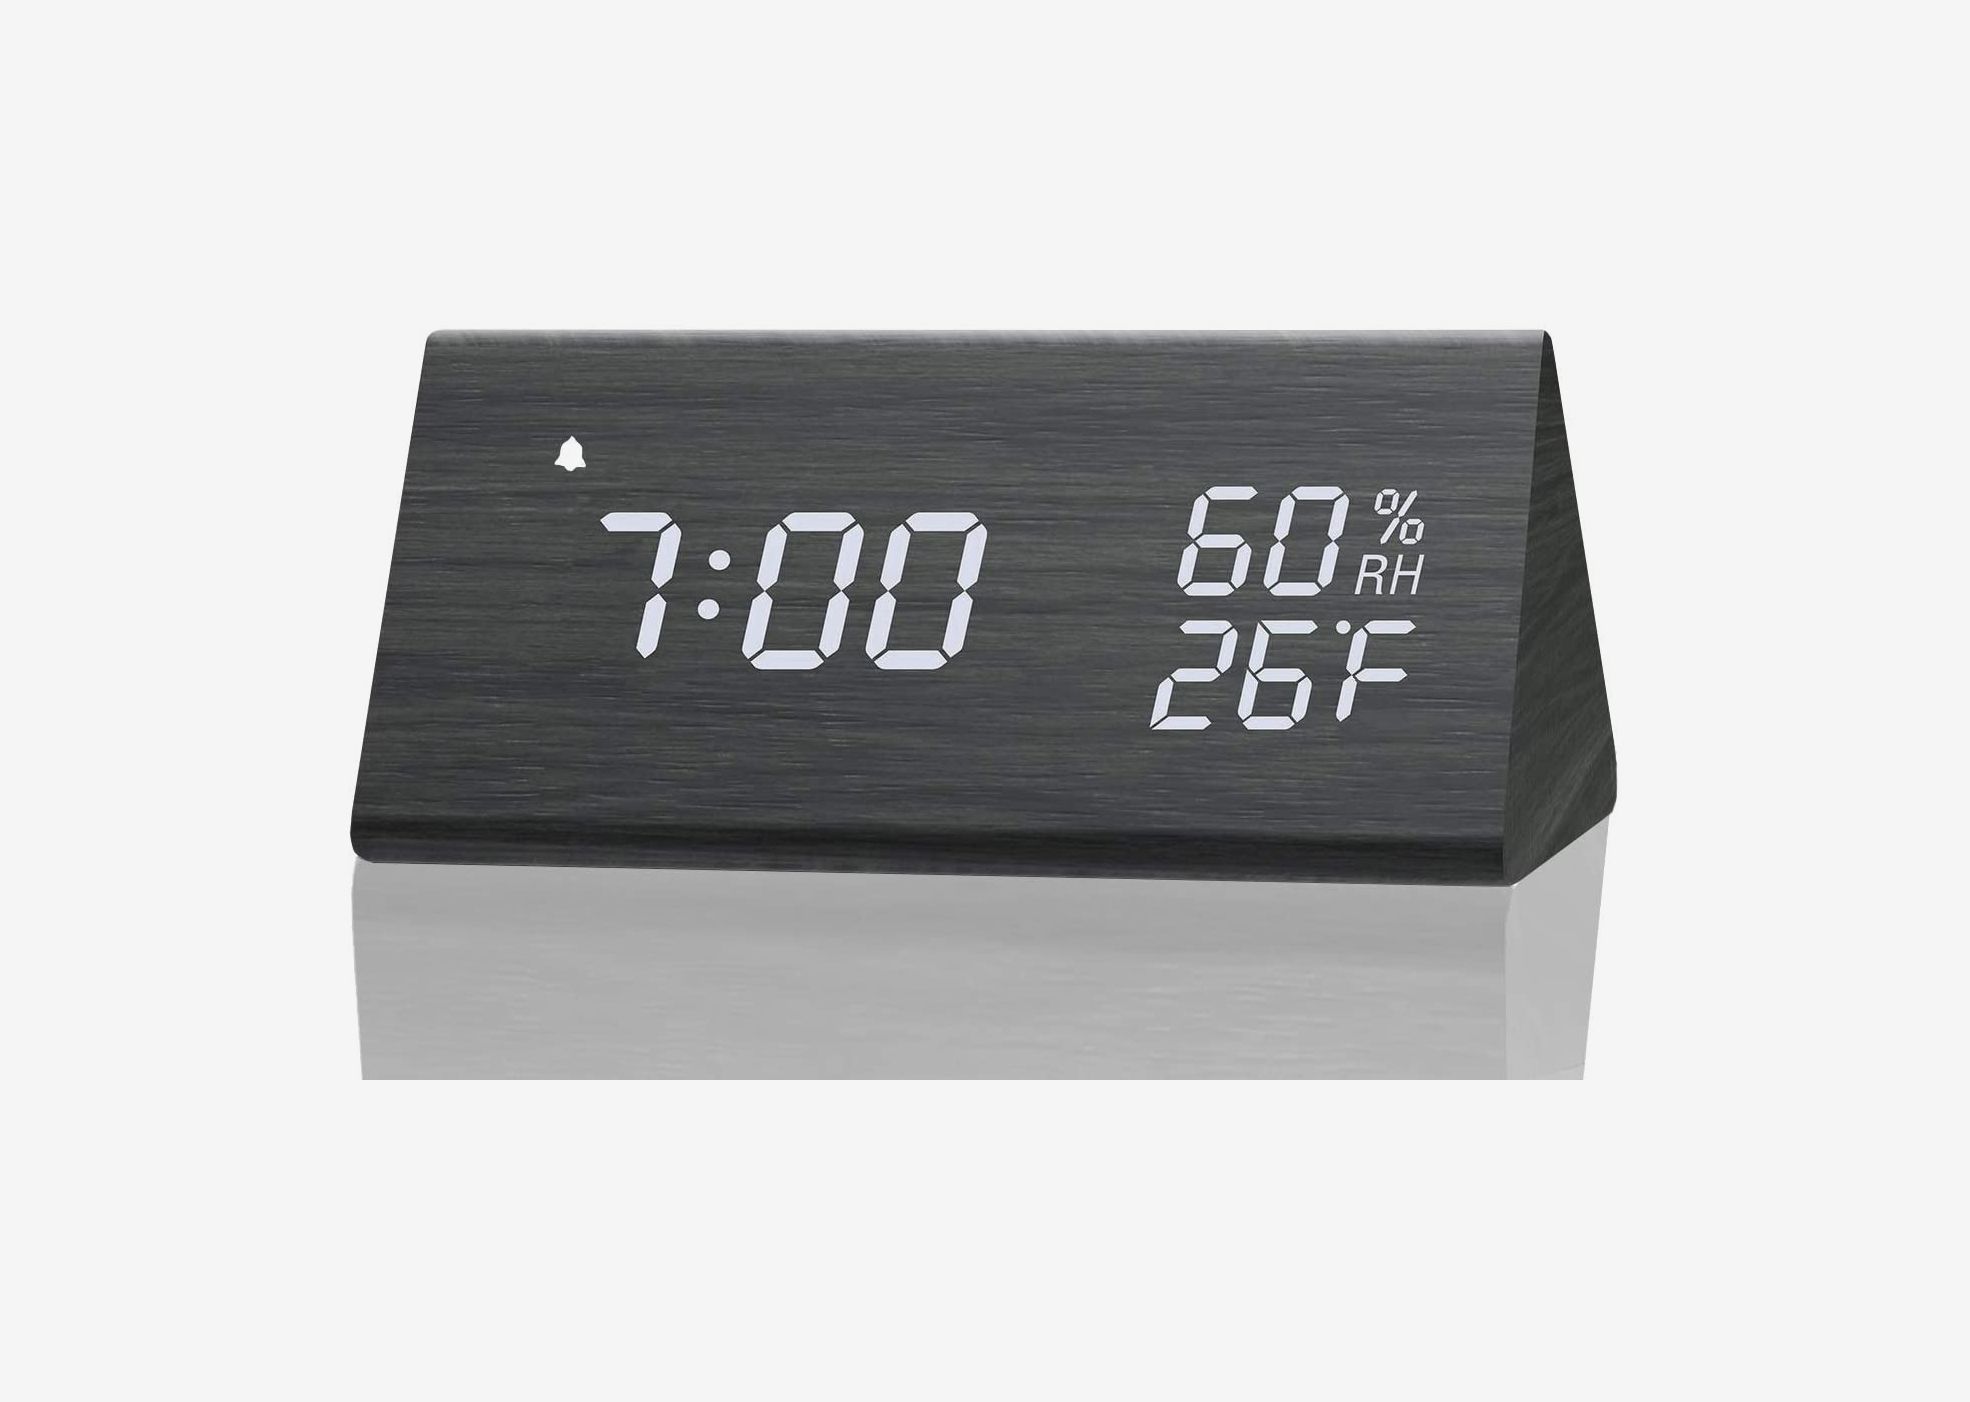 Small Digital Alarm Clock Cheap Electric Cute Alarm Clocks Battery Alarm Clock 